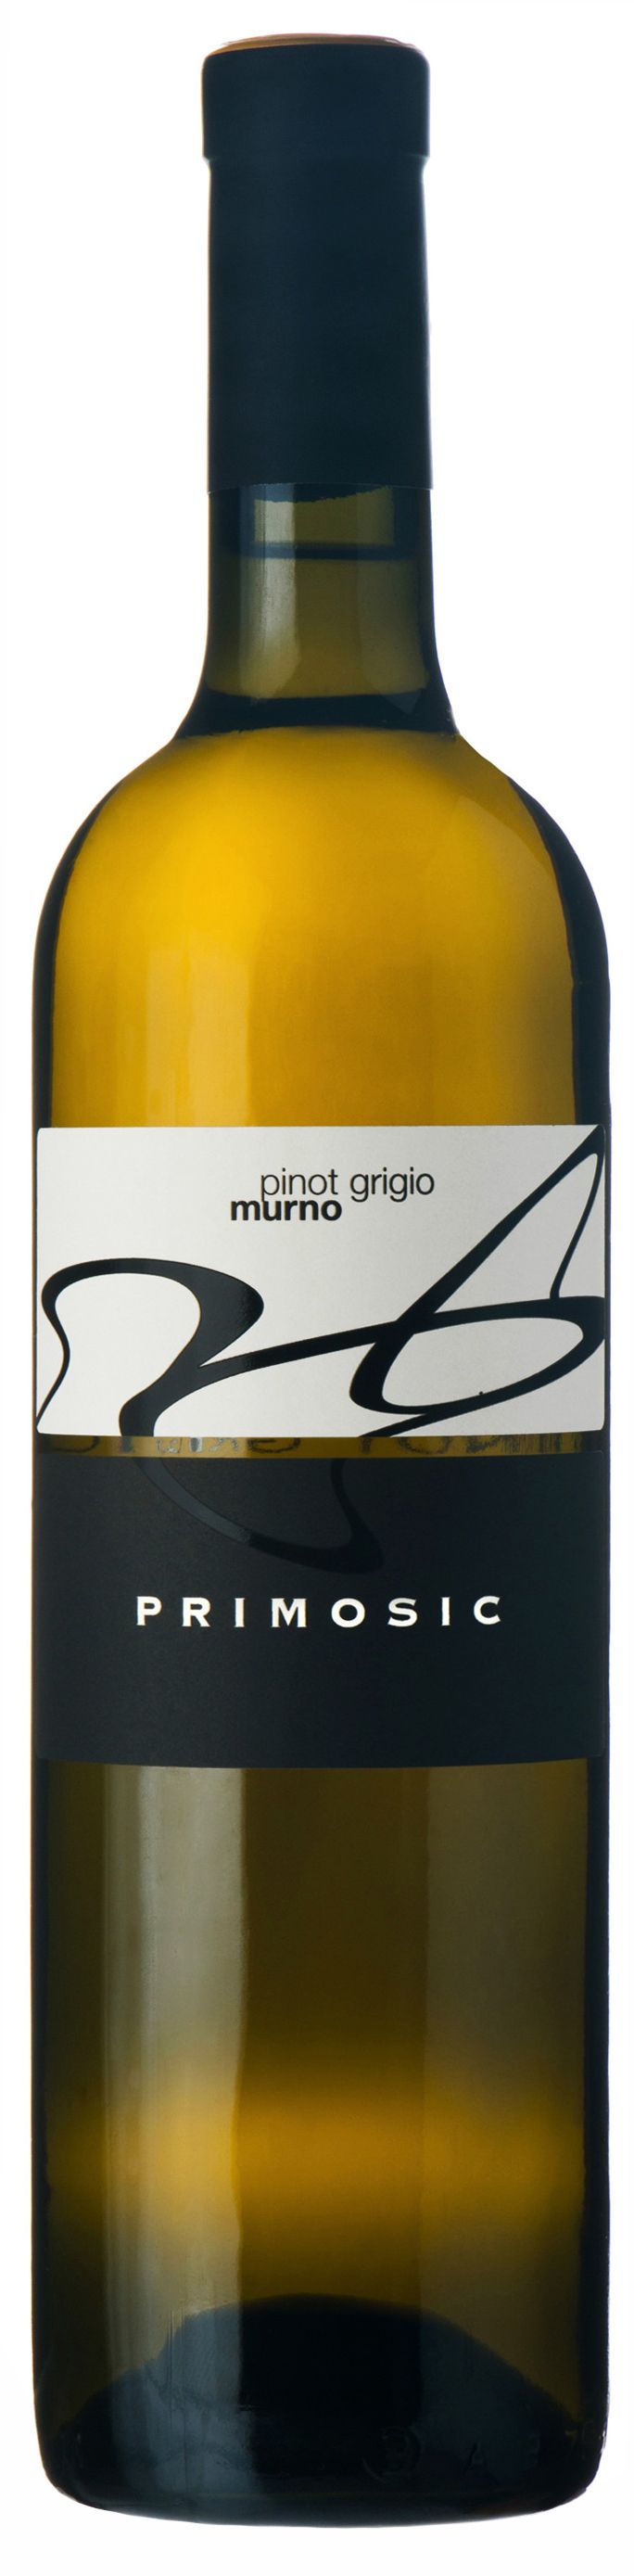 Primosic, Pinot Grigio Murno, 2013